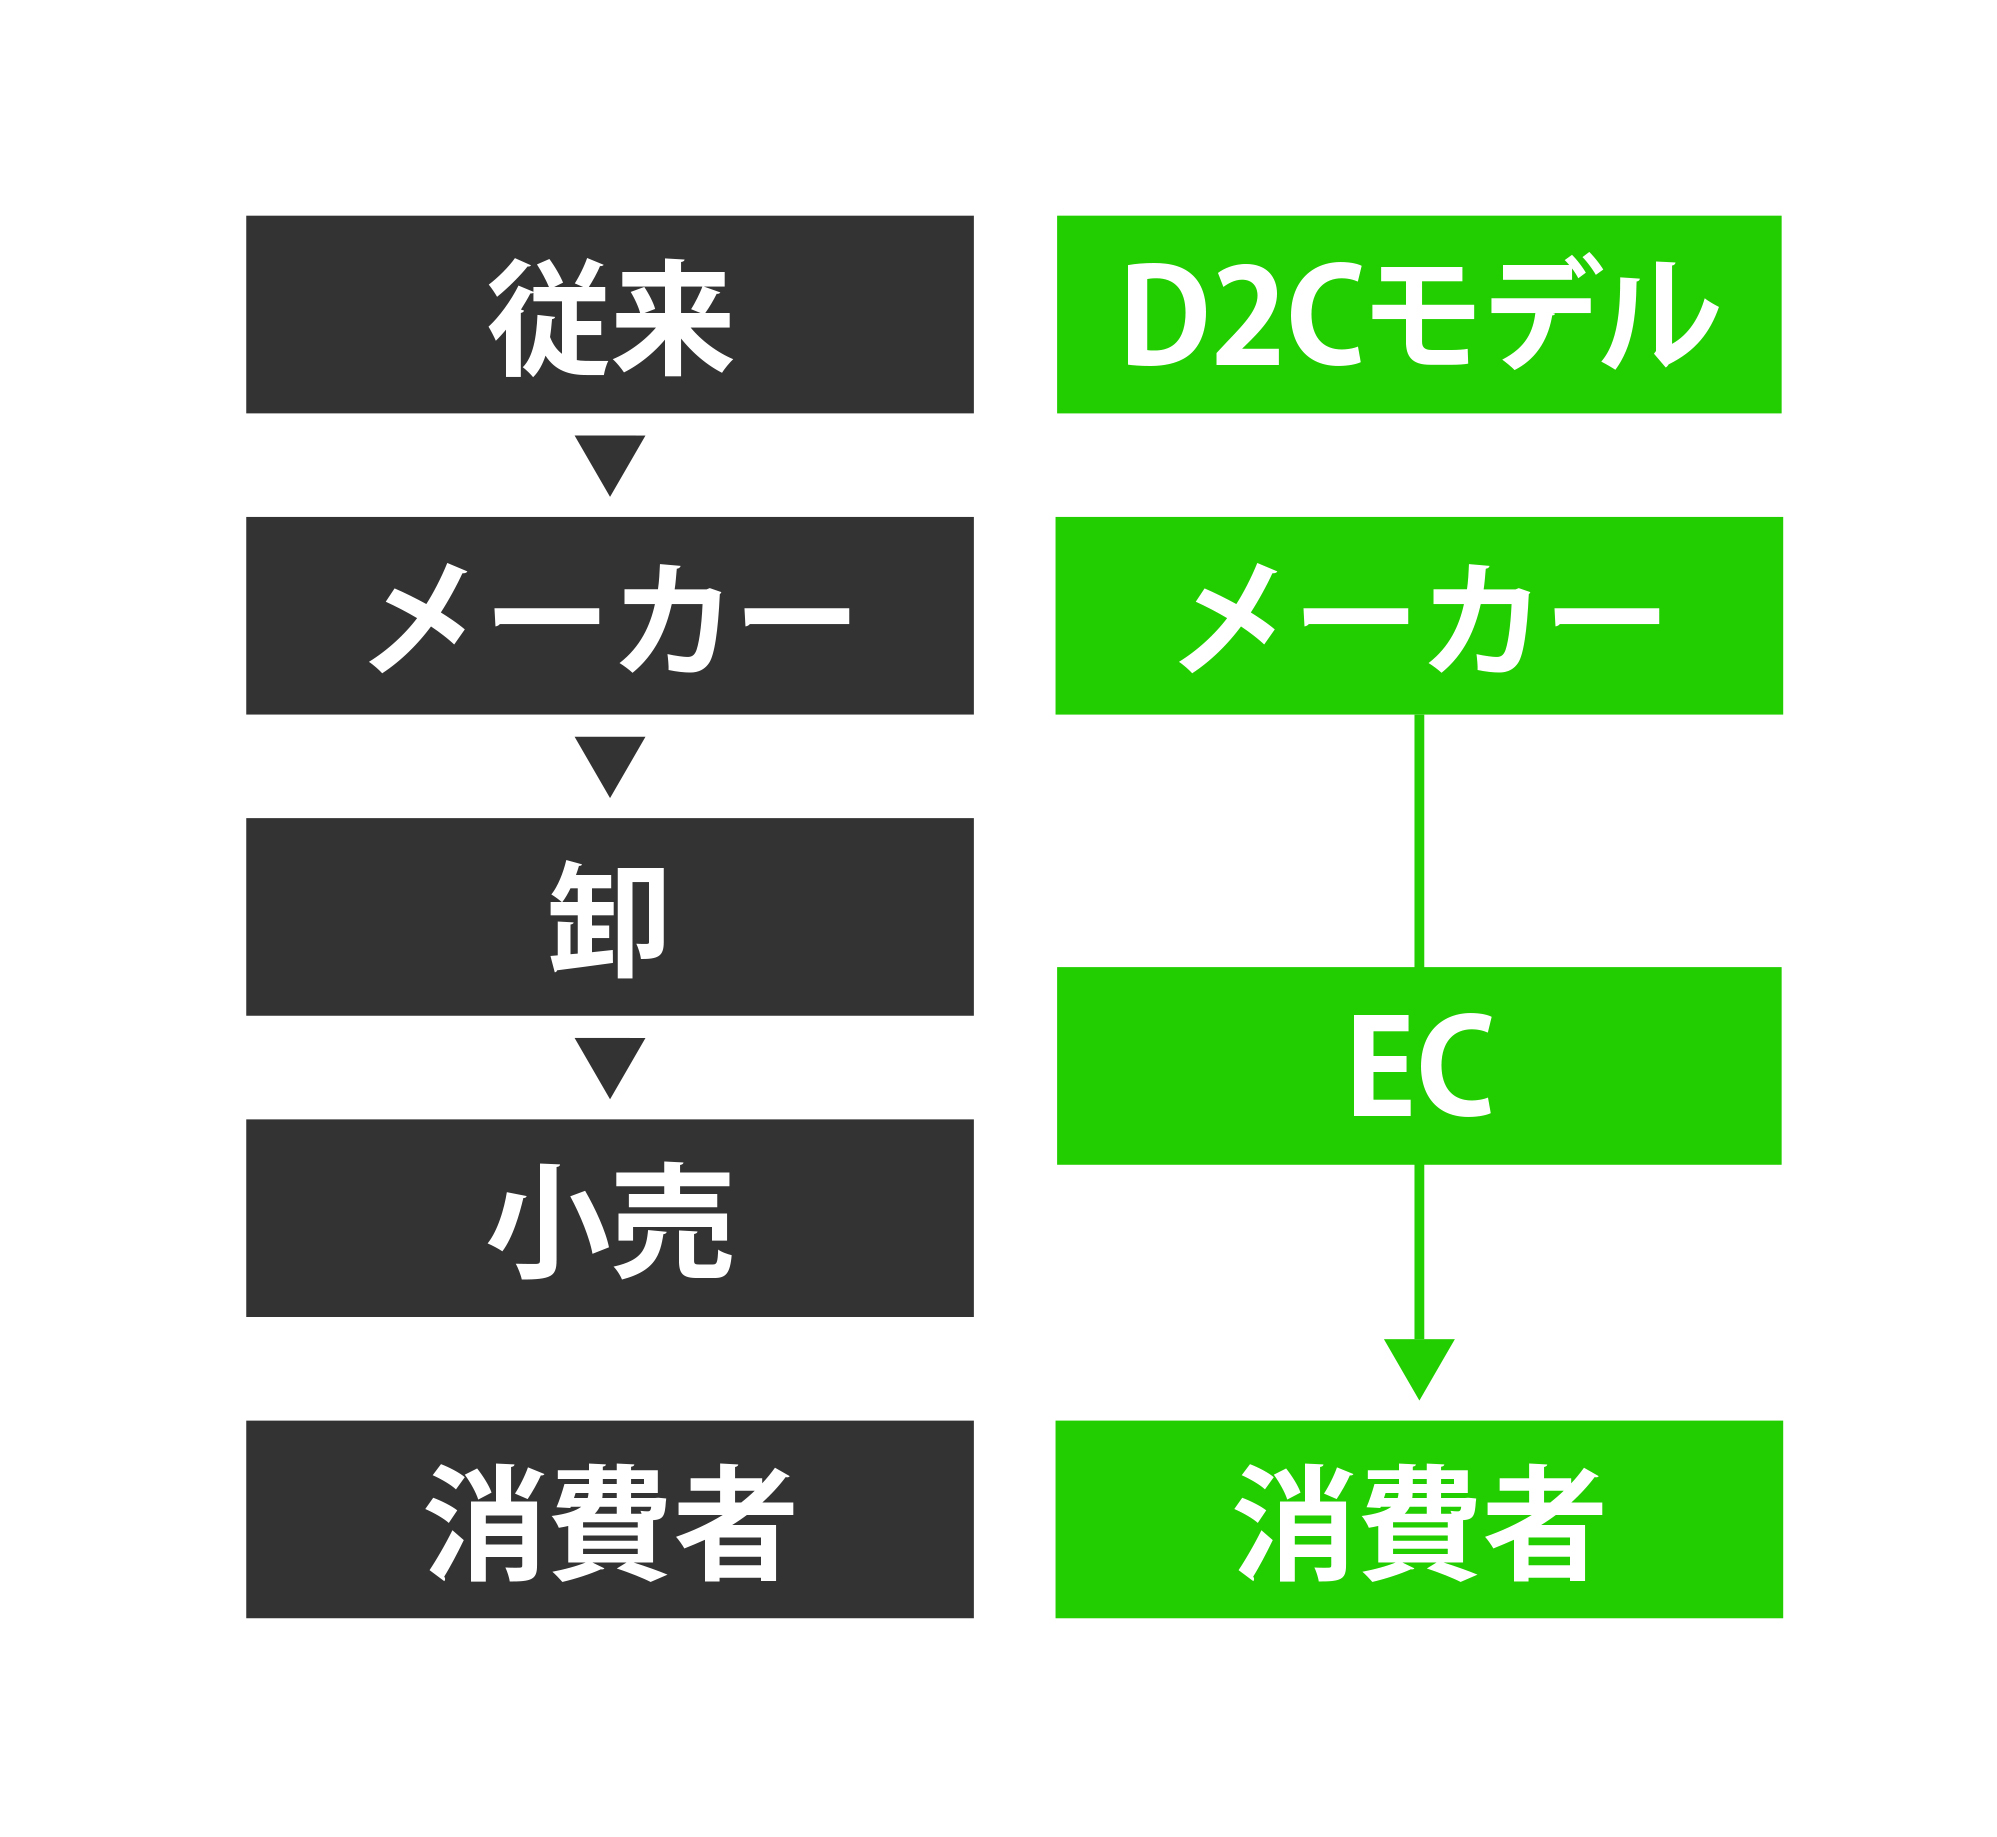 従来モデルとD2Cの流通モデル